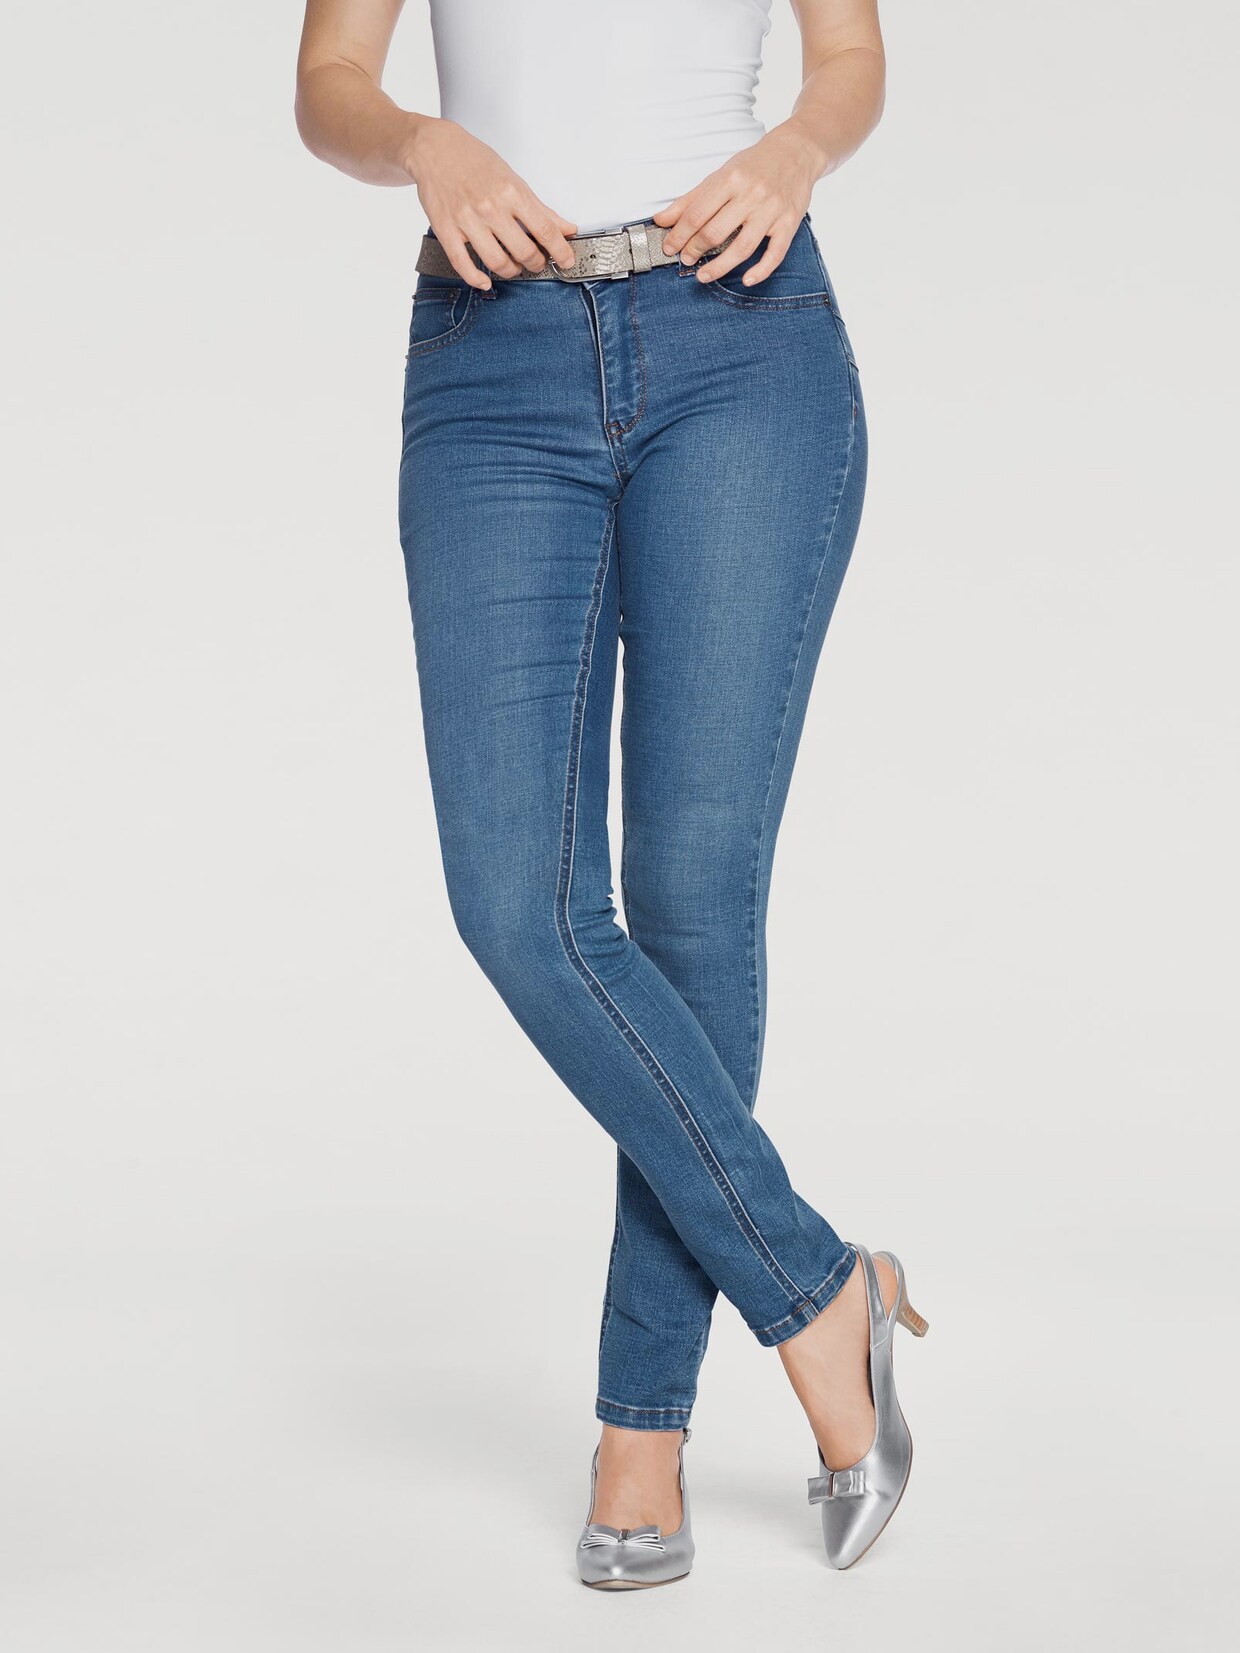 Linea Tesini jeans effet ventre plat - délavé